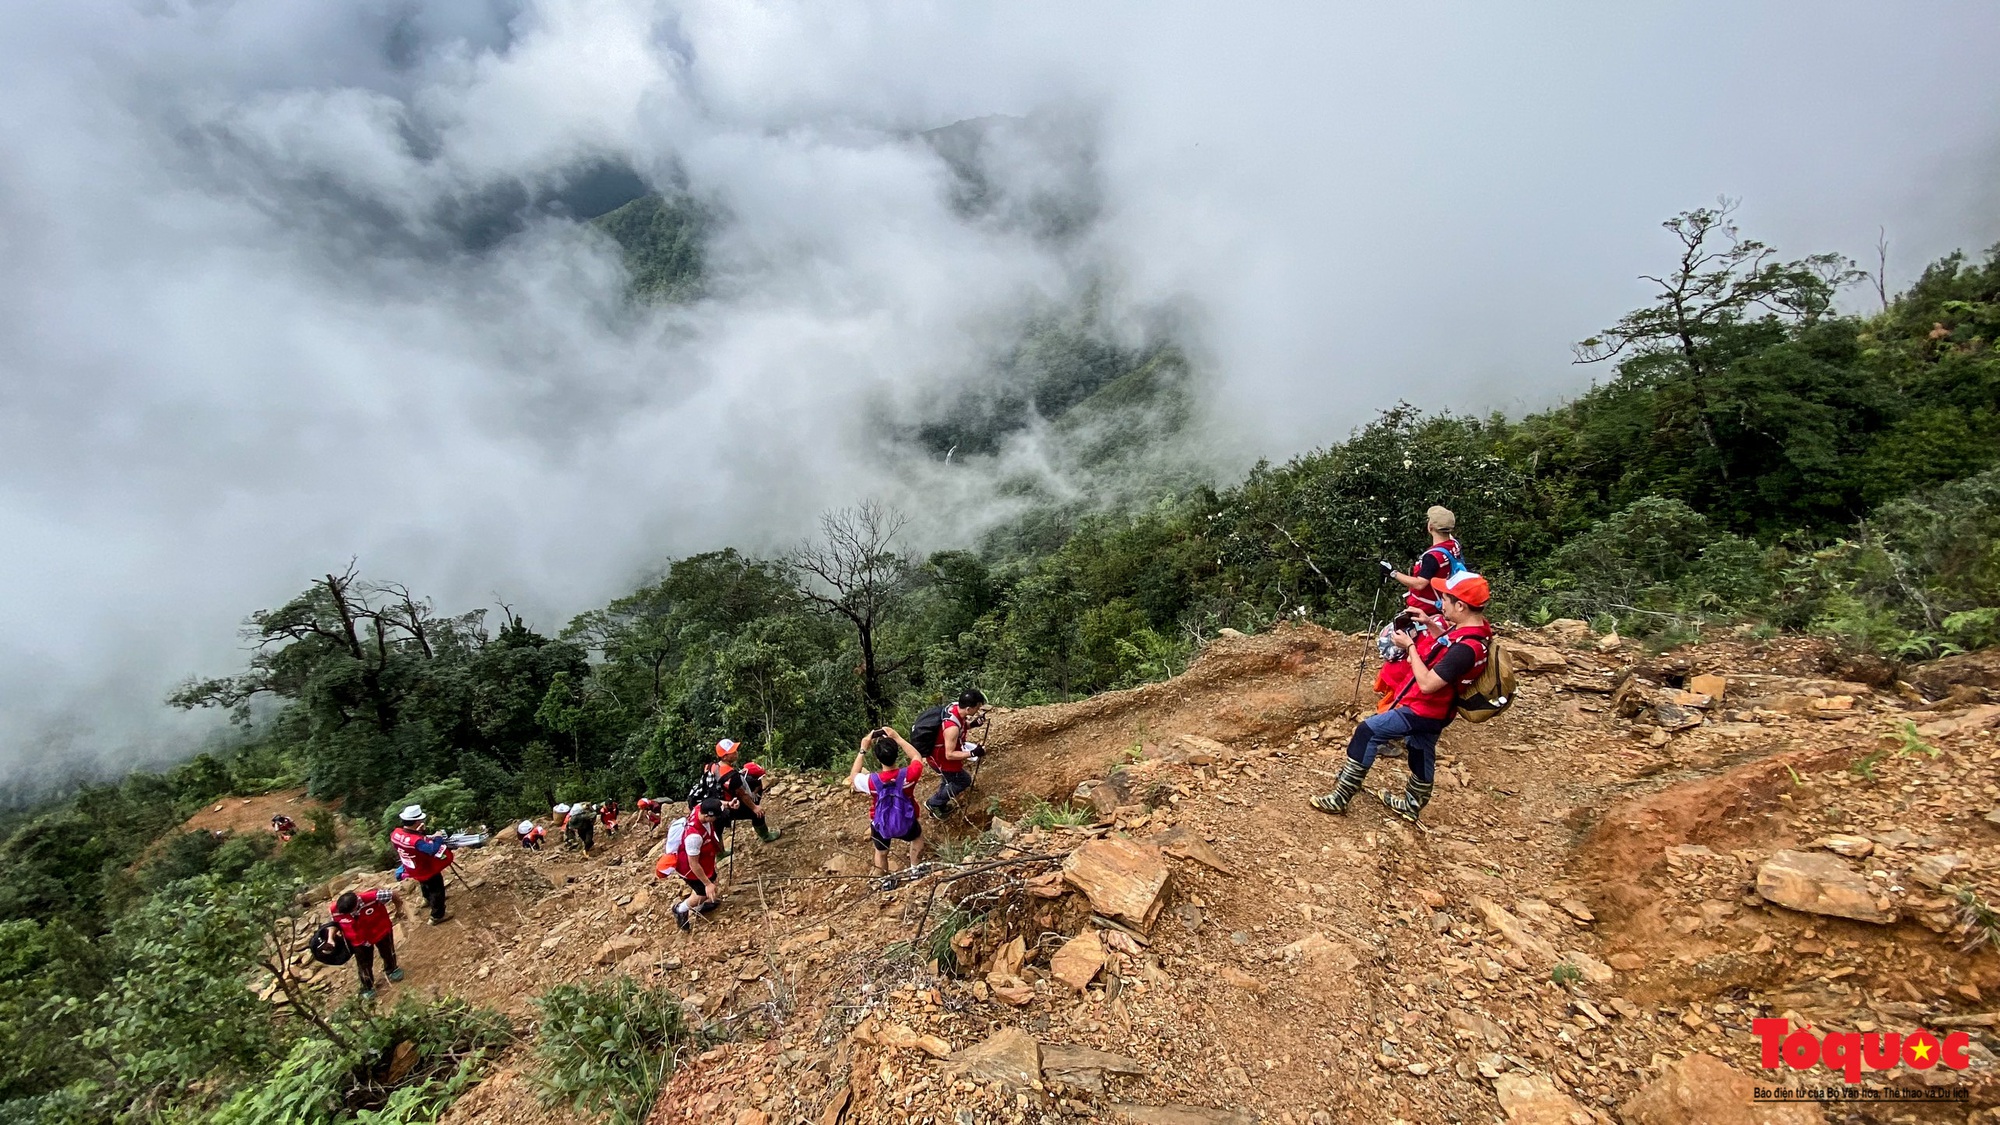 Hơn 100 nhà báo, phóng viên chinh phục đỉnh Tà Chì Nhù ở độ cao 2927m - Ảnh 5.